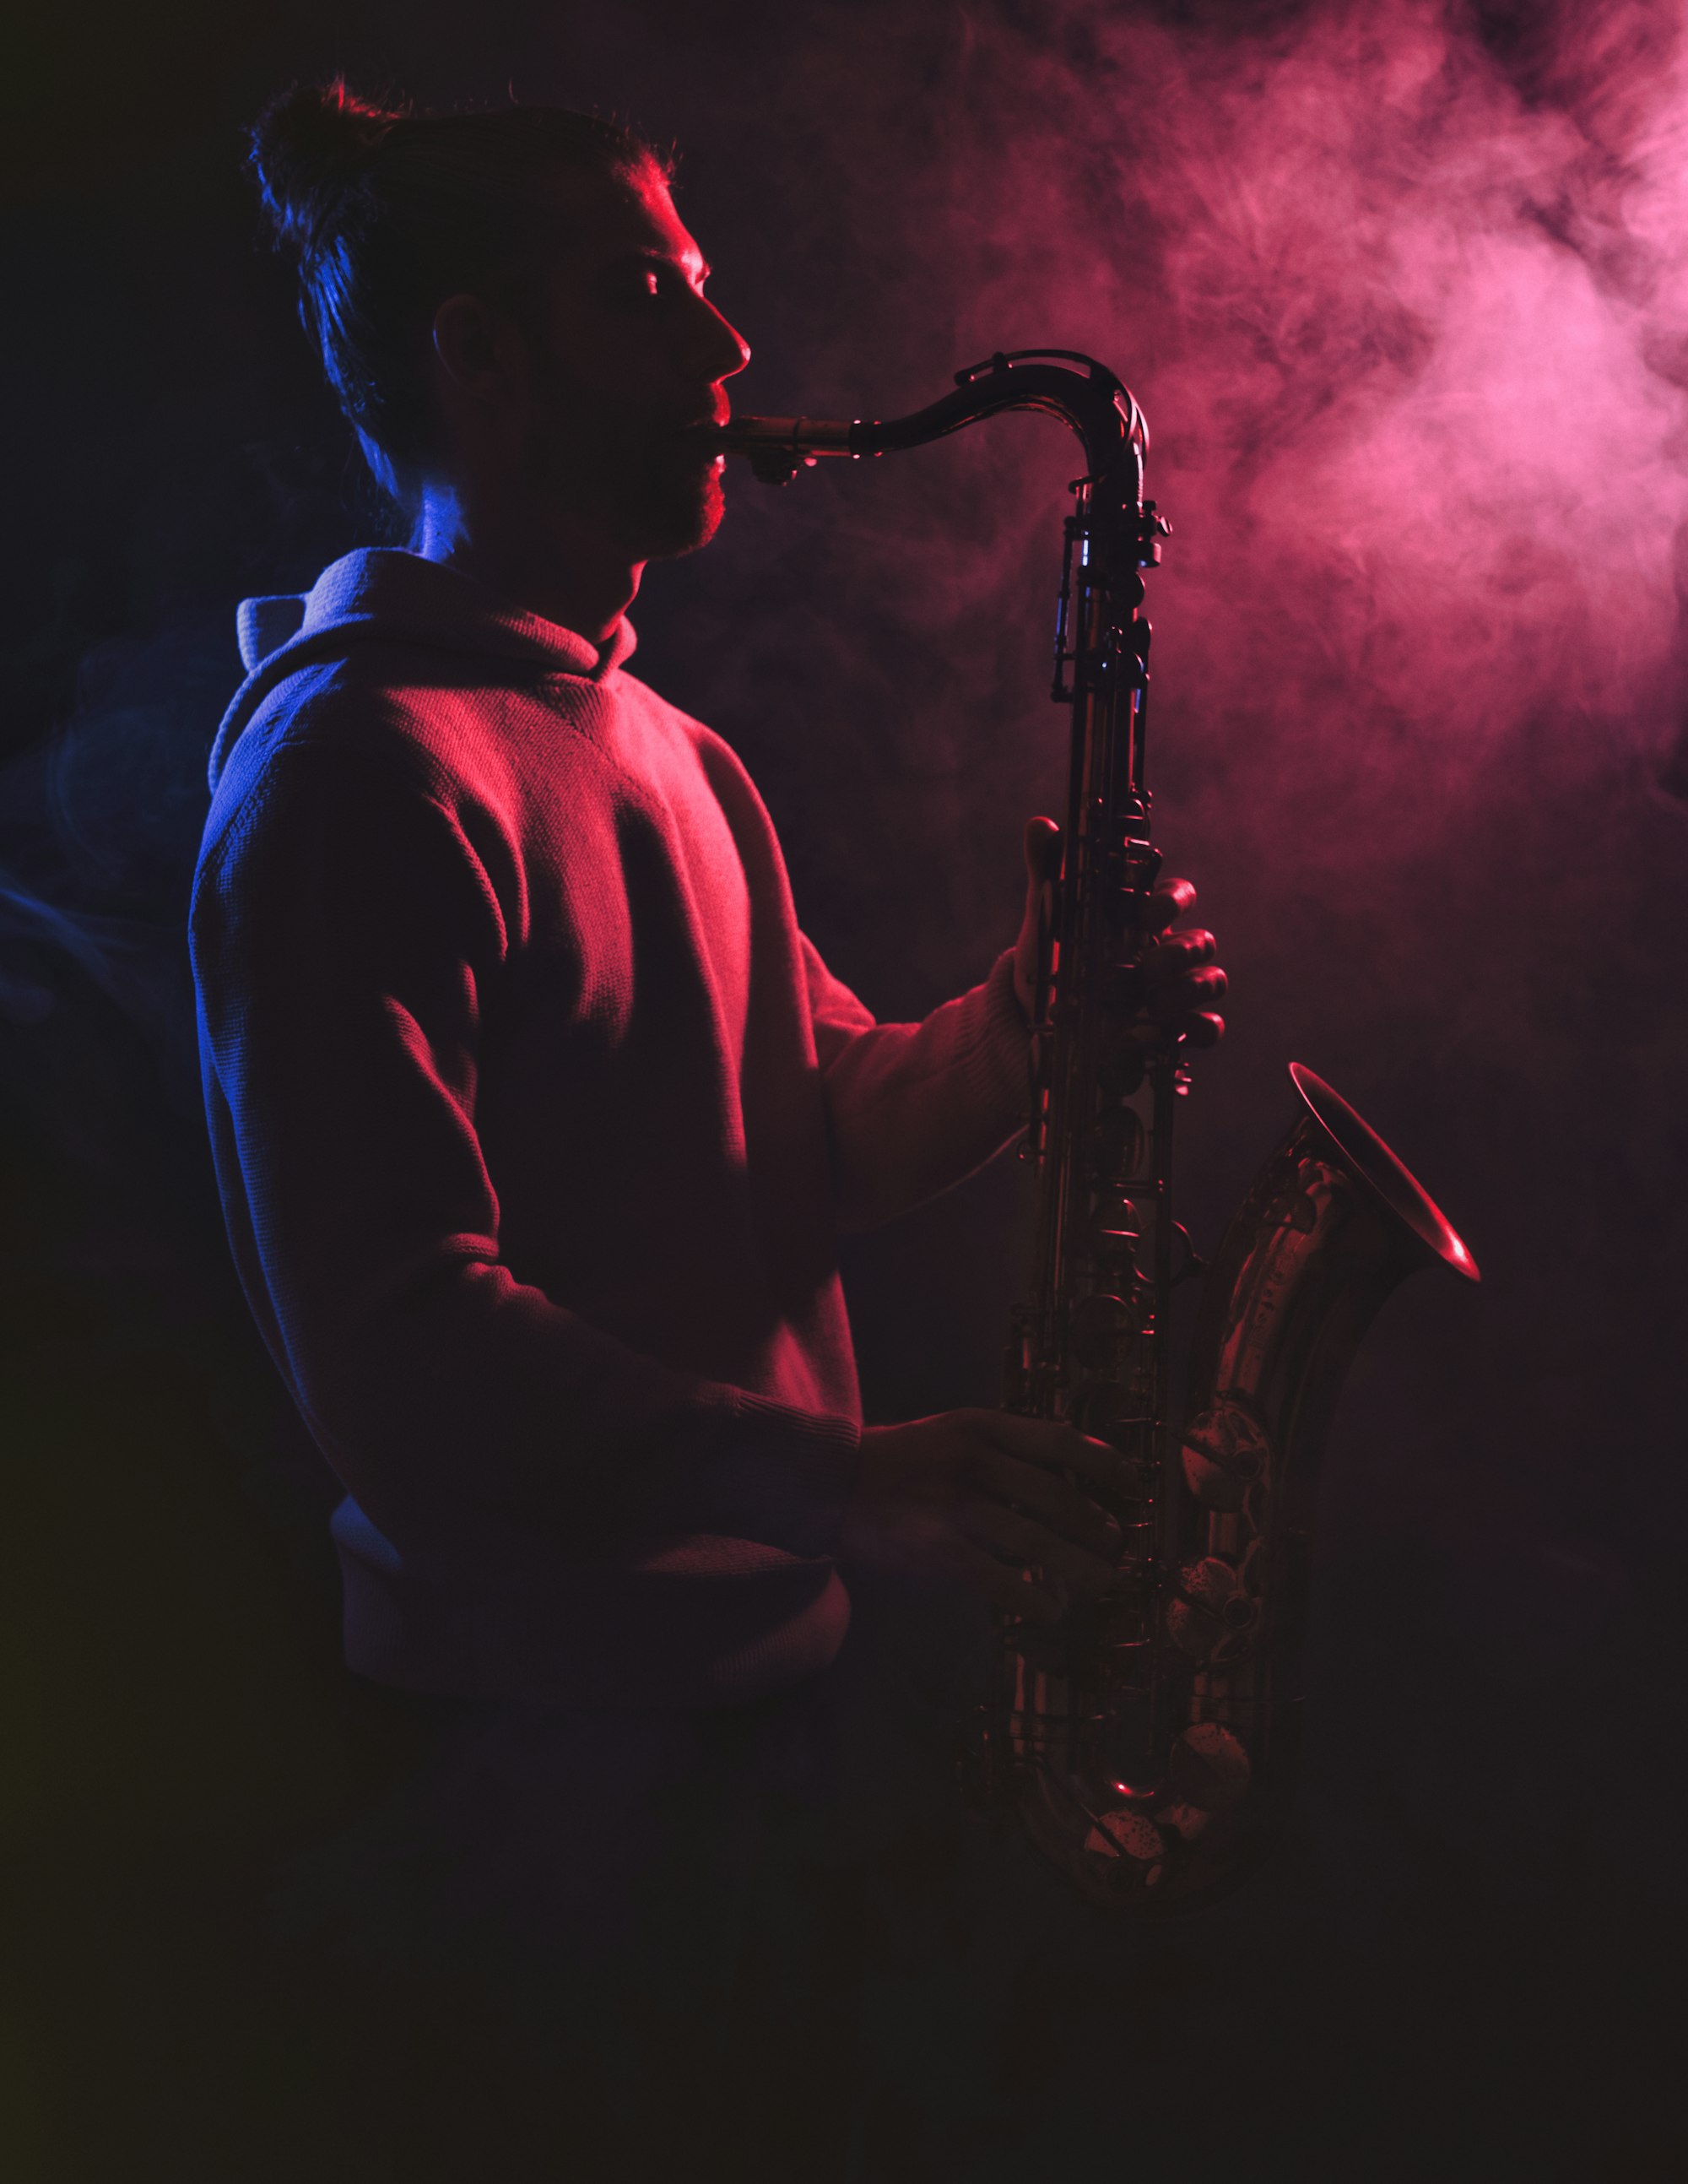 Saksofonist bestillingsguide 2023 - Priser, råd og vanlige spørsmål